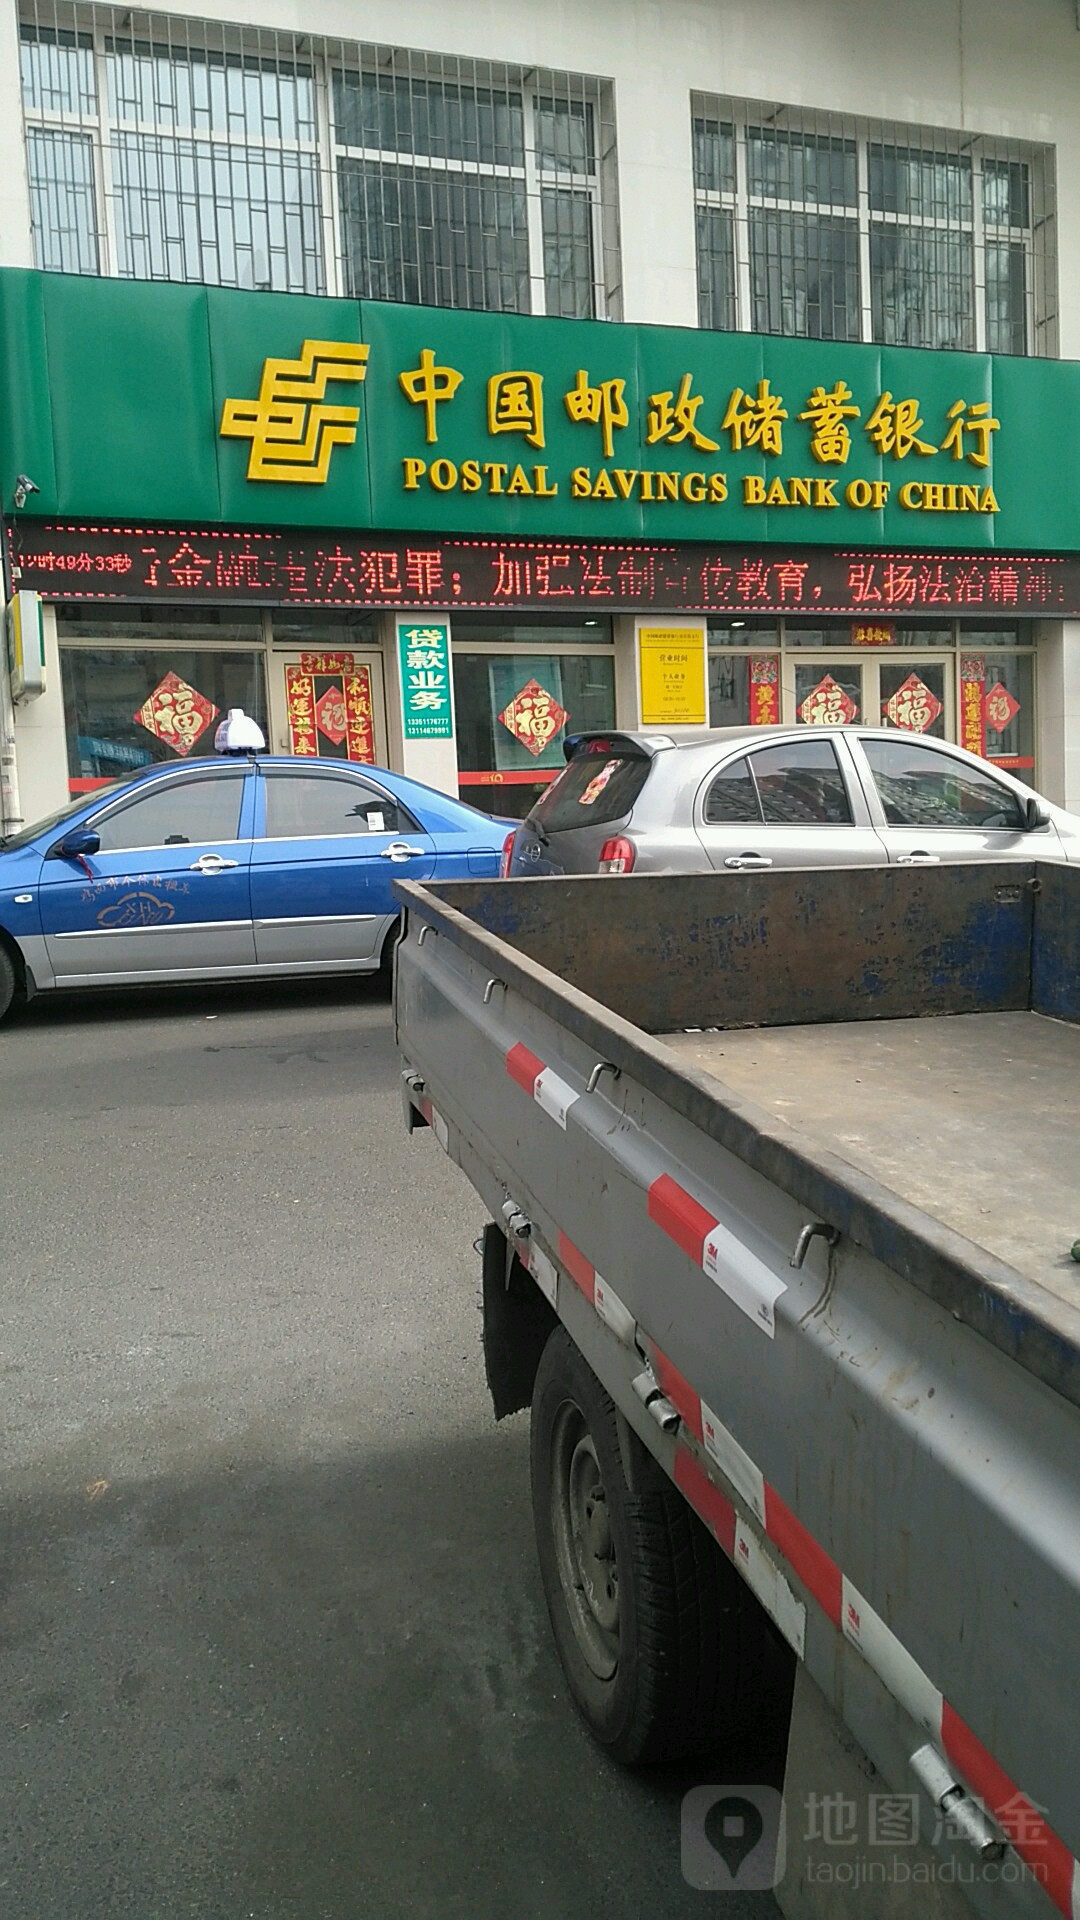 中國郵政儲蓄銀行(南星街支行)